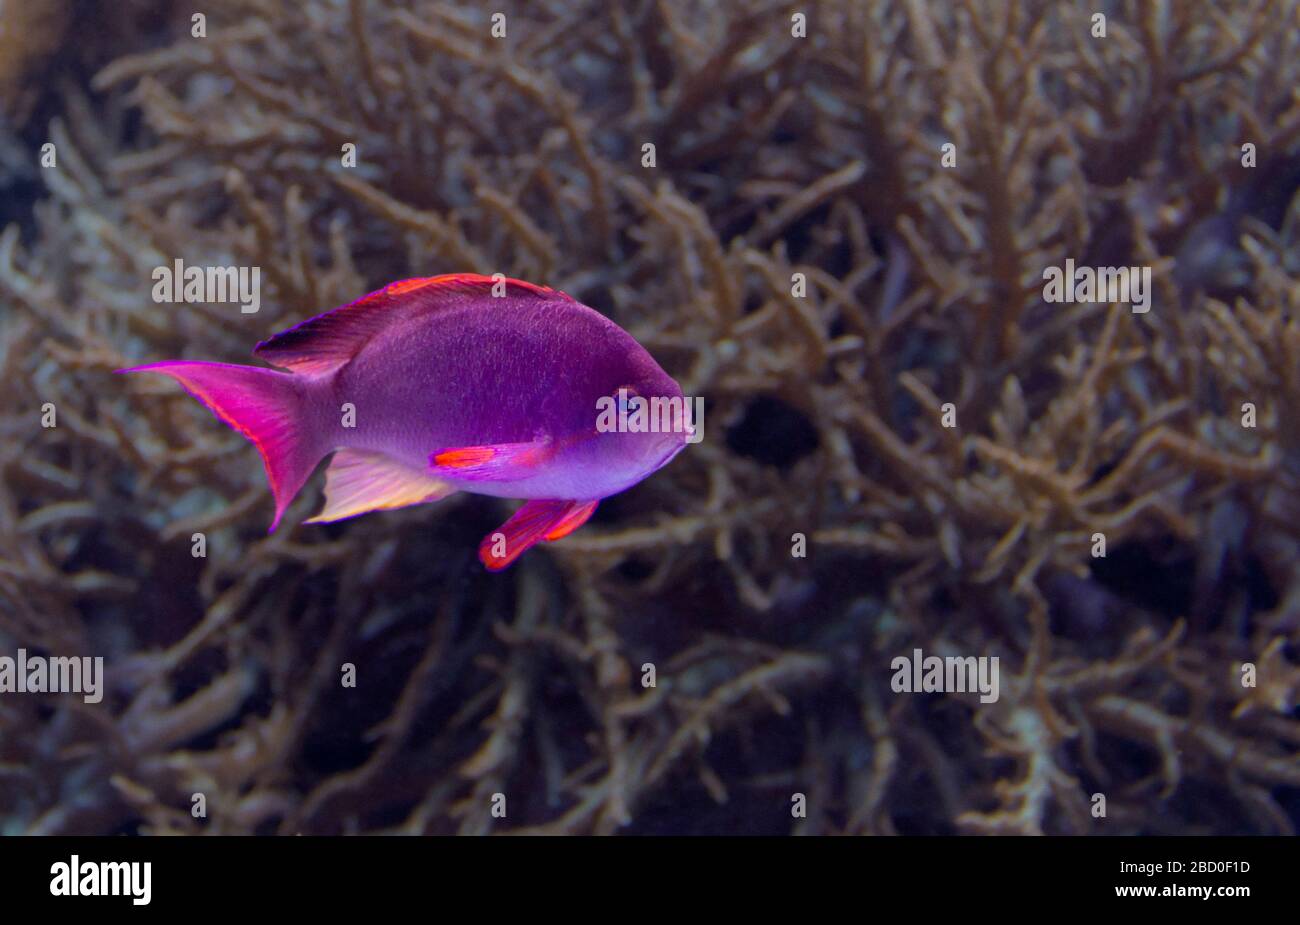 paisaje submarino que muestra un pez coral púrpura en un ambiente natural Foto de stock